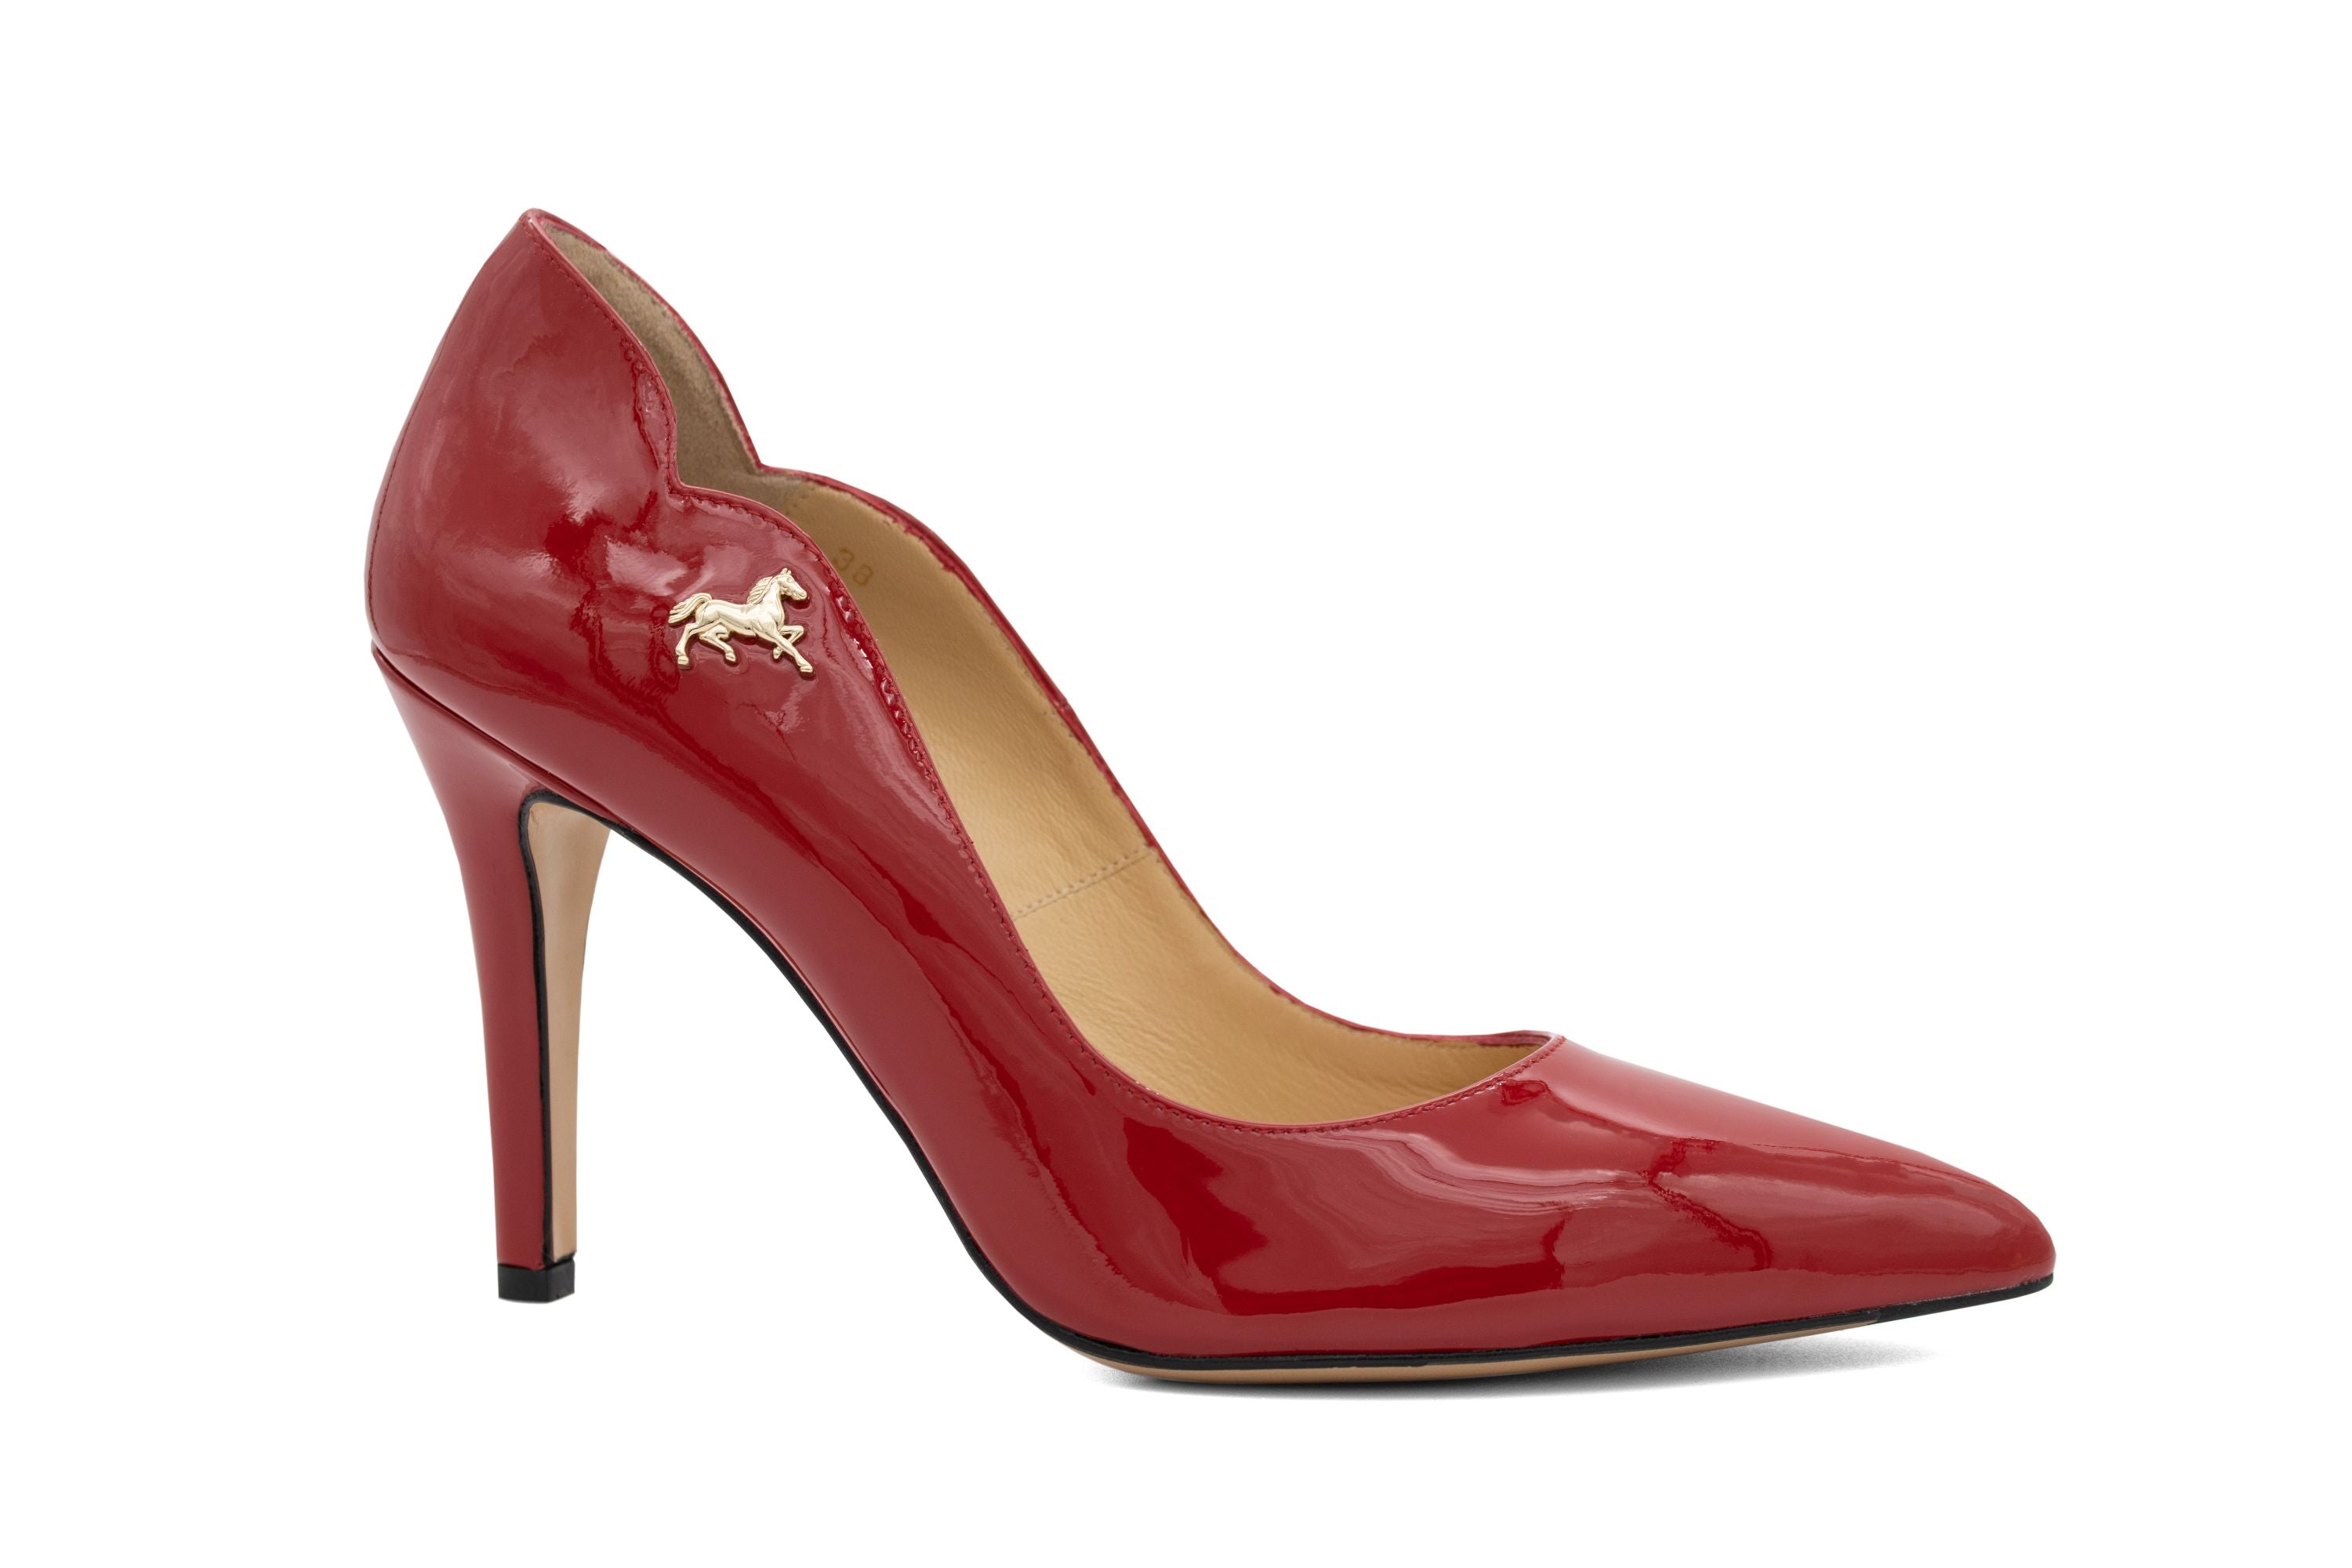 5 Inch Heel SEDUCE-420 Red Patent Plus Size Classic Pumps – Shoecup.com